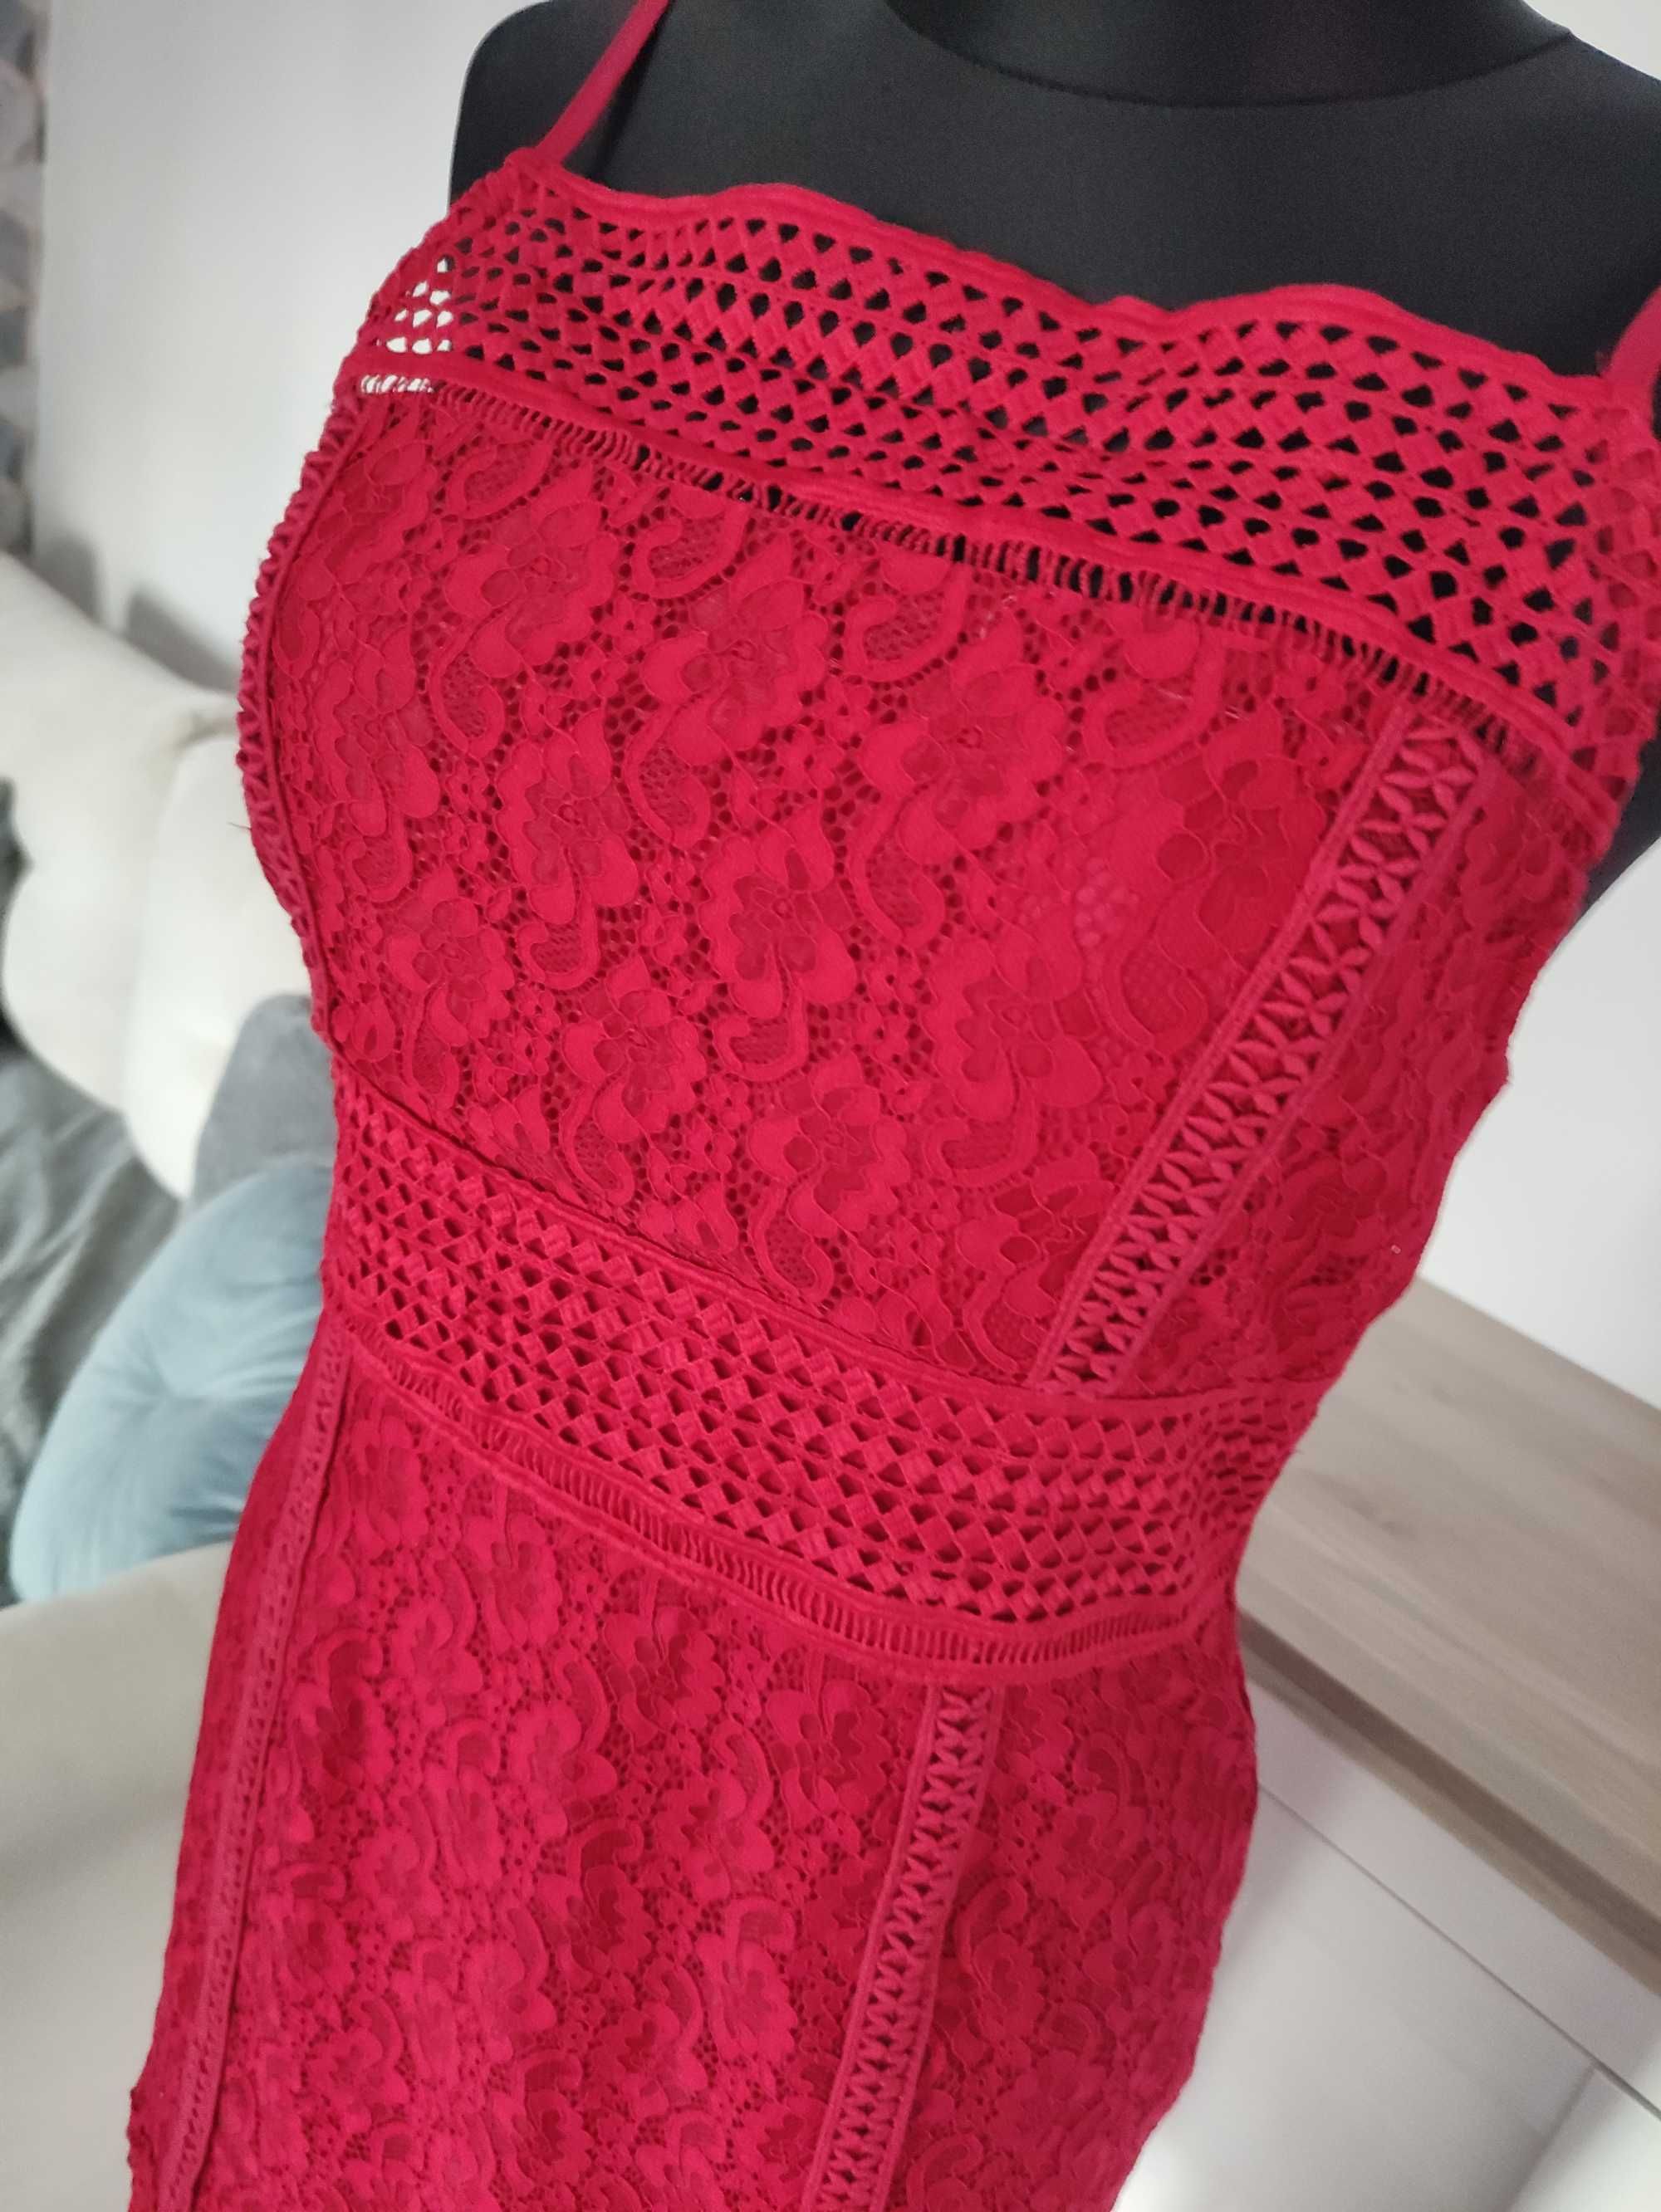 sukienka bordowa czerwona koronkowa Missguided  prosta koktajlowa M 36